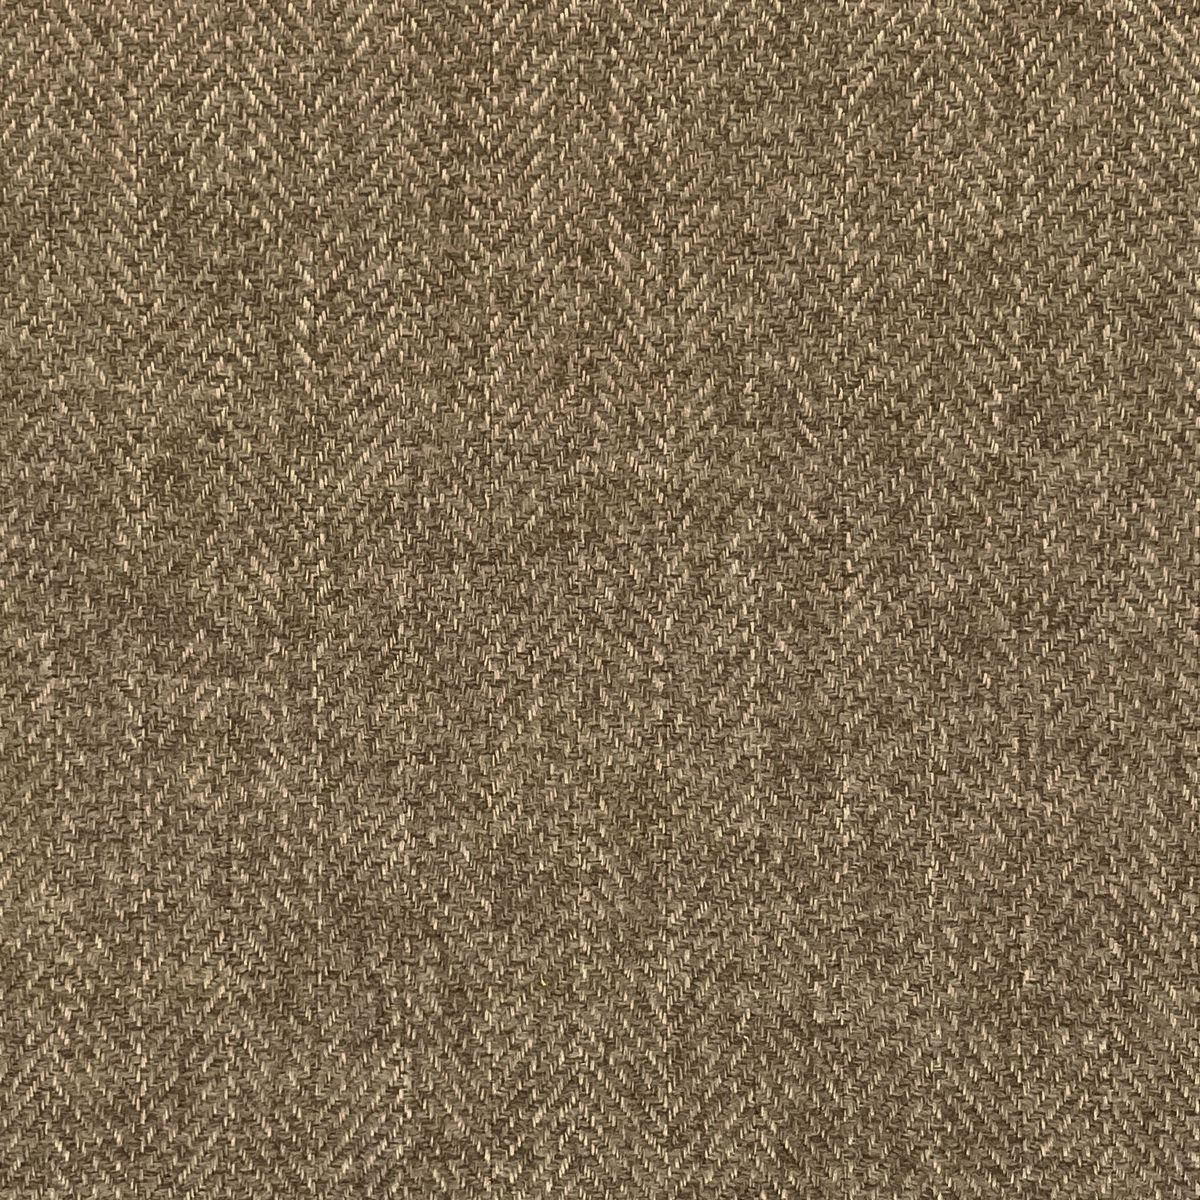 Tweed Hazelnut Fabric by Chatham Glyn